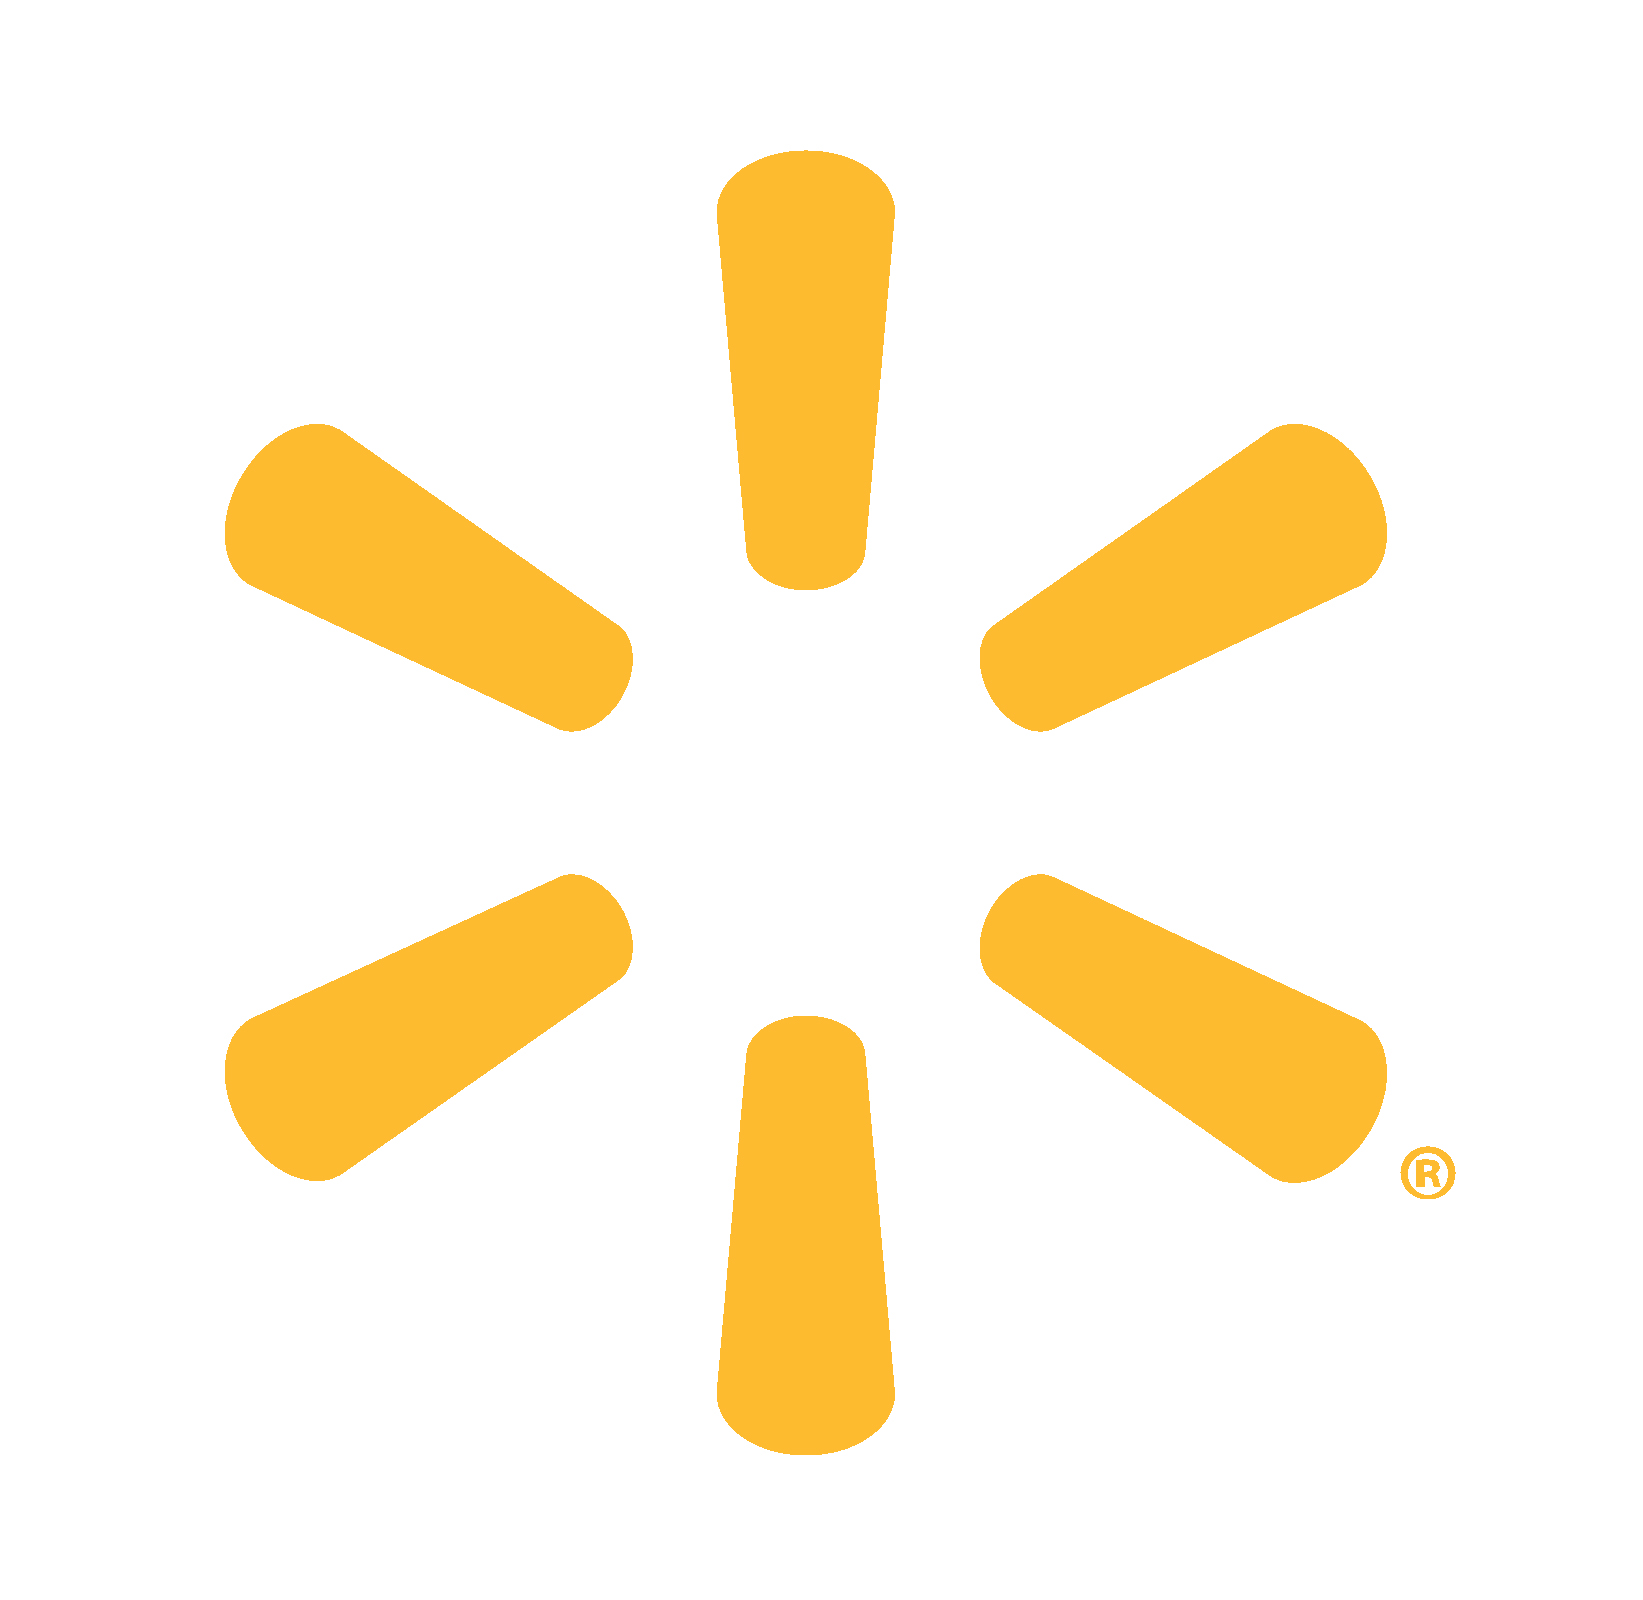 Walmart Logos